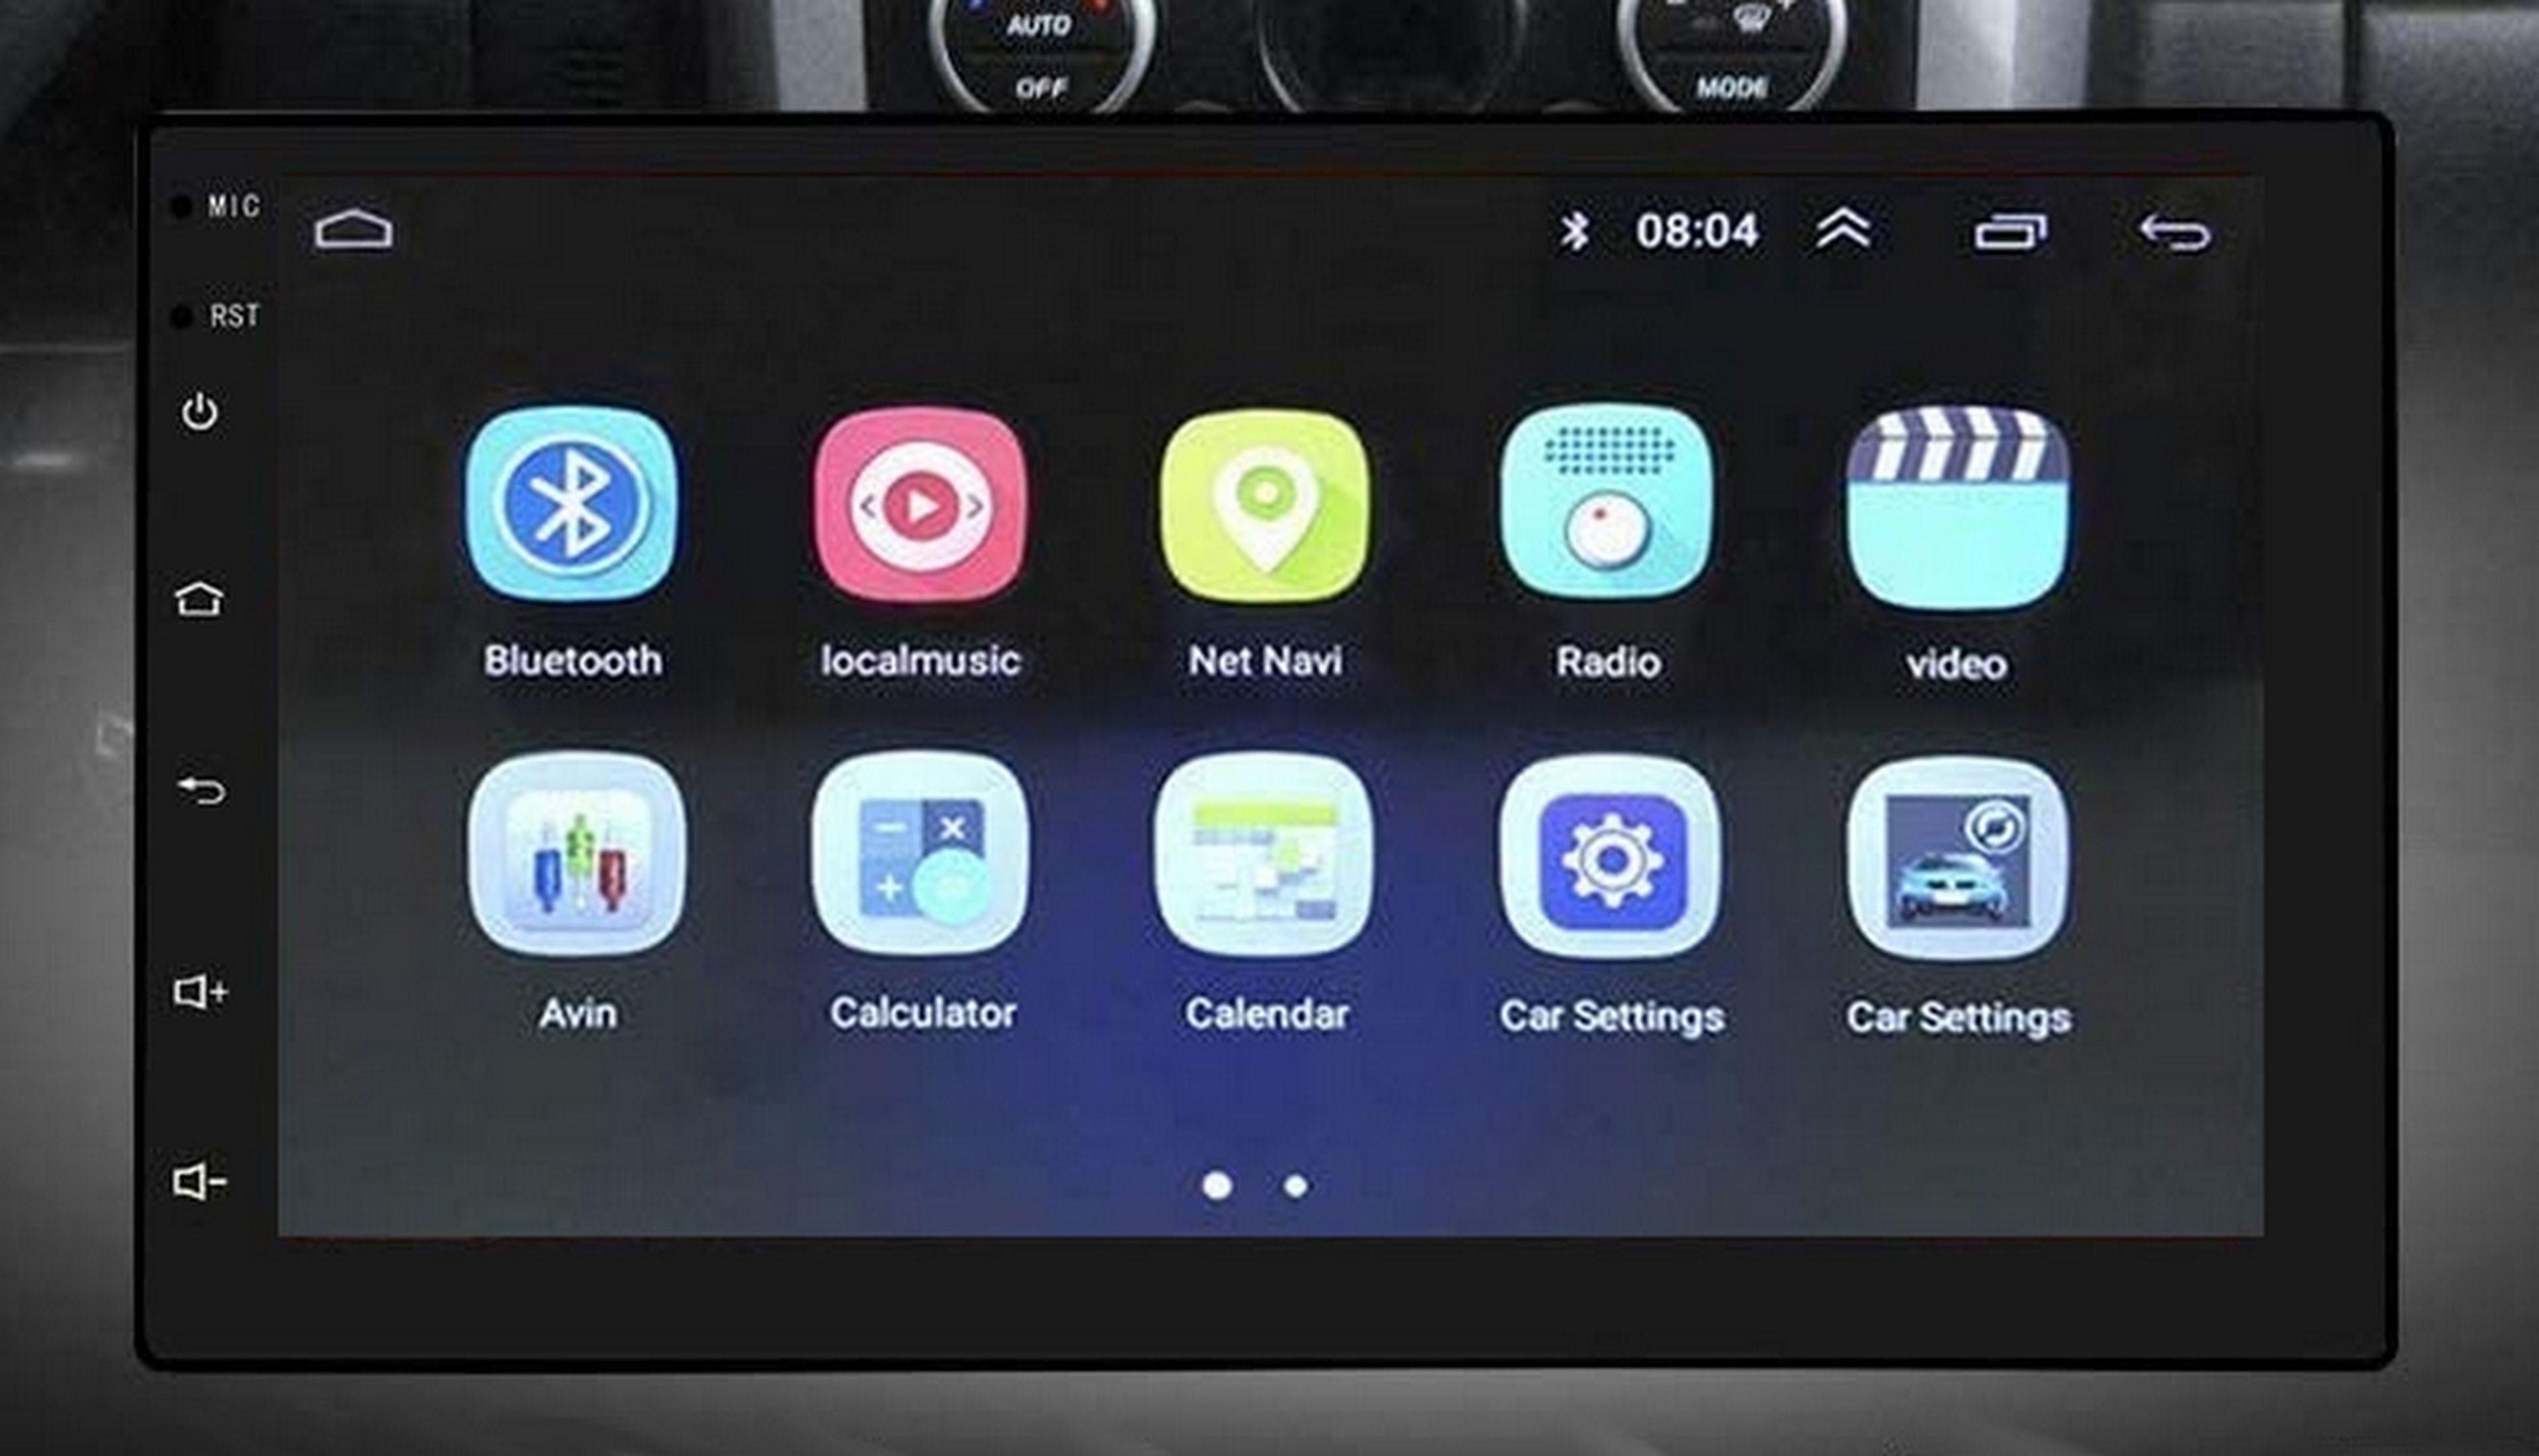 Moderniza tu coche con Android Auto gracias a esta pantalla inteligente, y por mucho menos de lo que pensabas